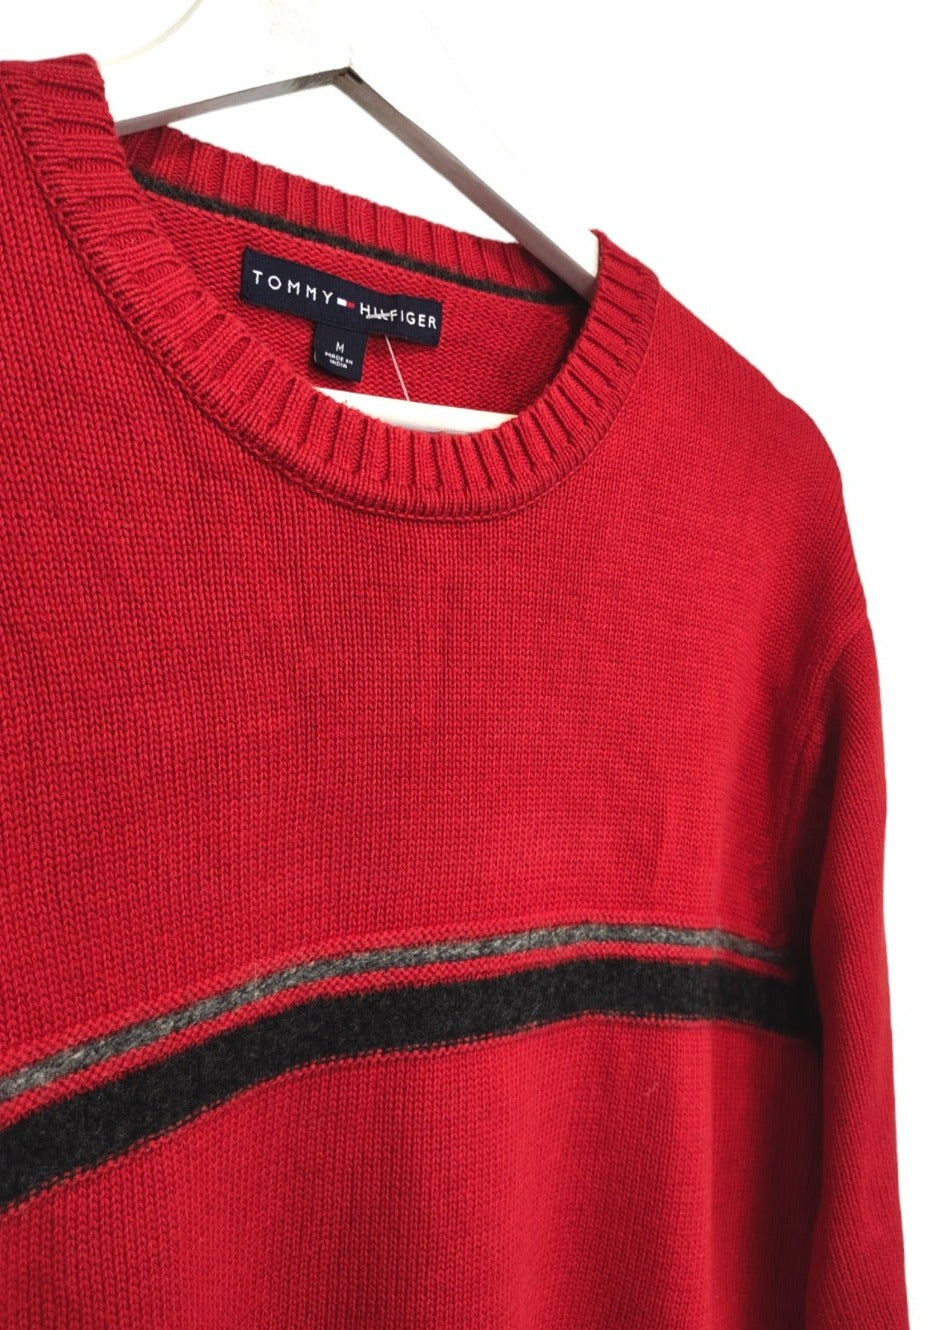 Πλεκτή Ανδρική Μπλούζα/Πουλόβερ TOMMY HILFIGER σε Κόκκινο χρώμα (Medium)